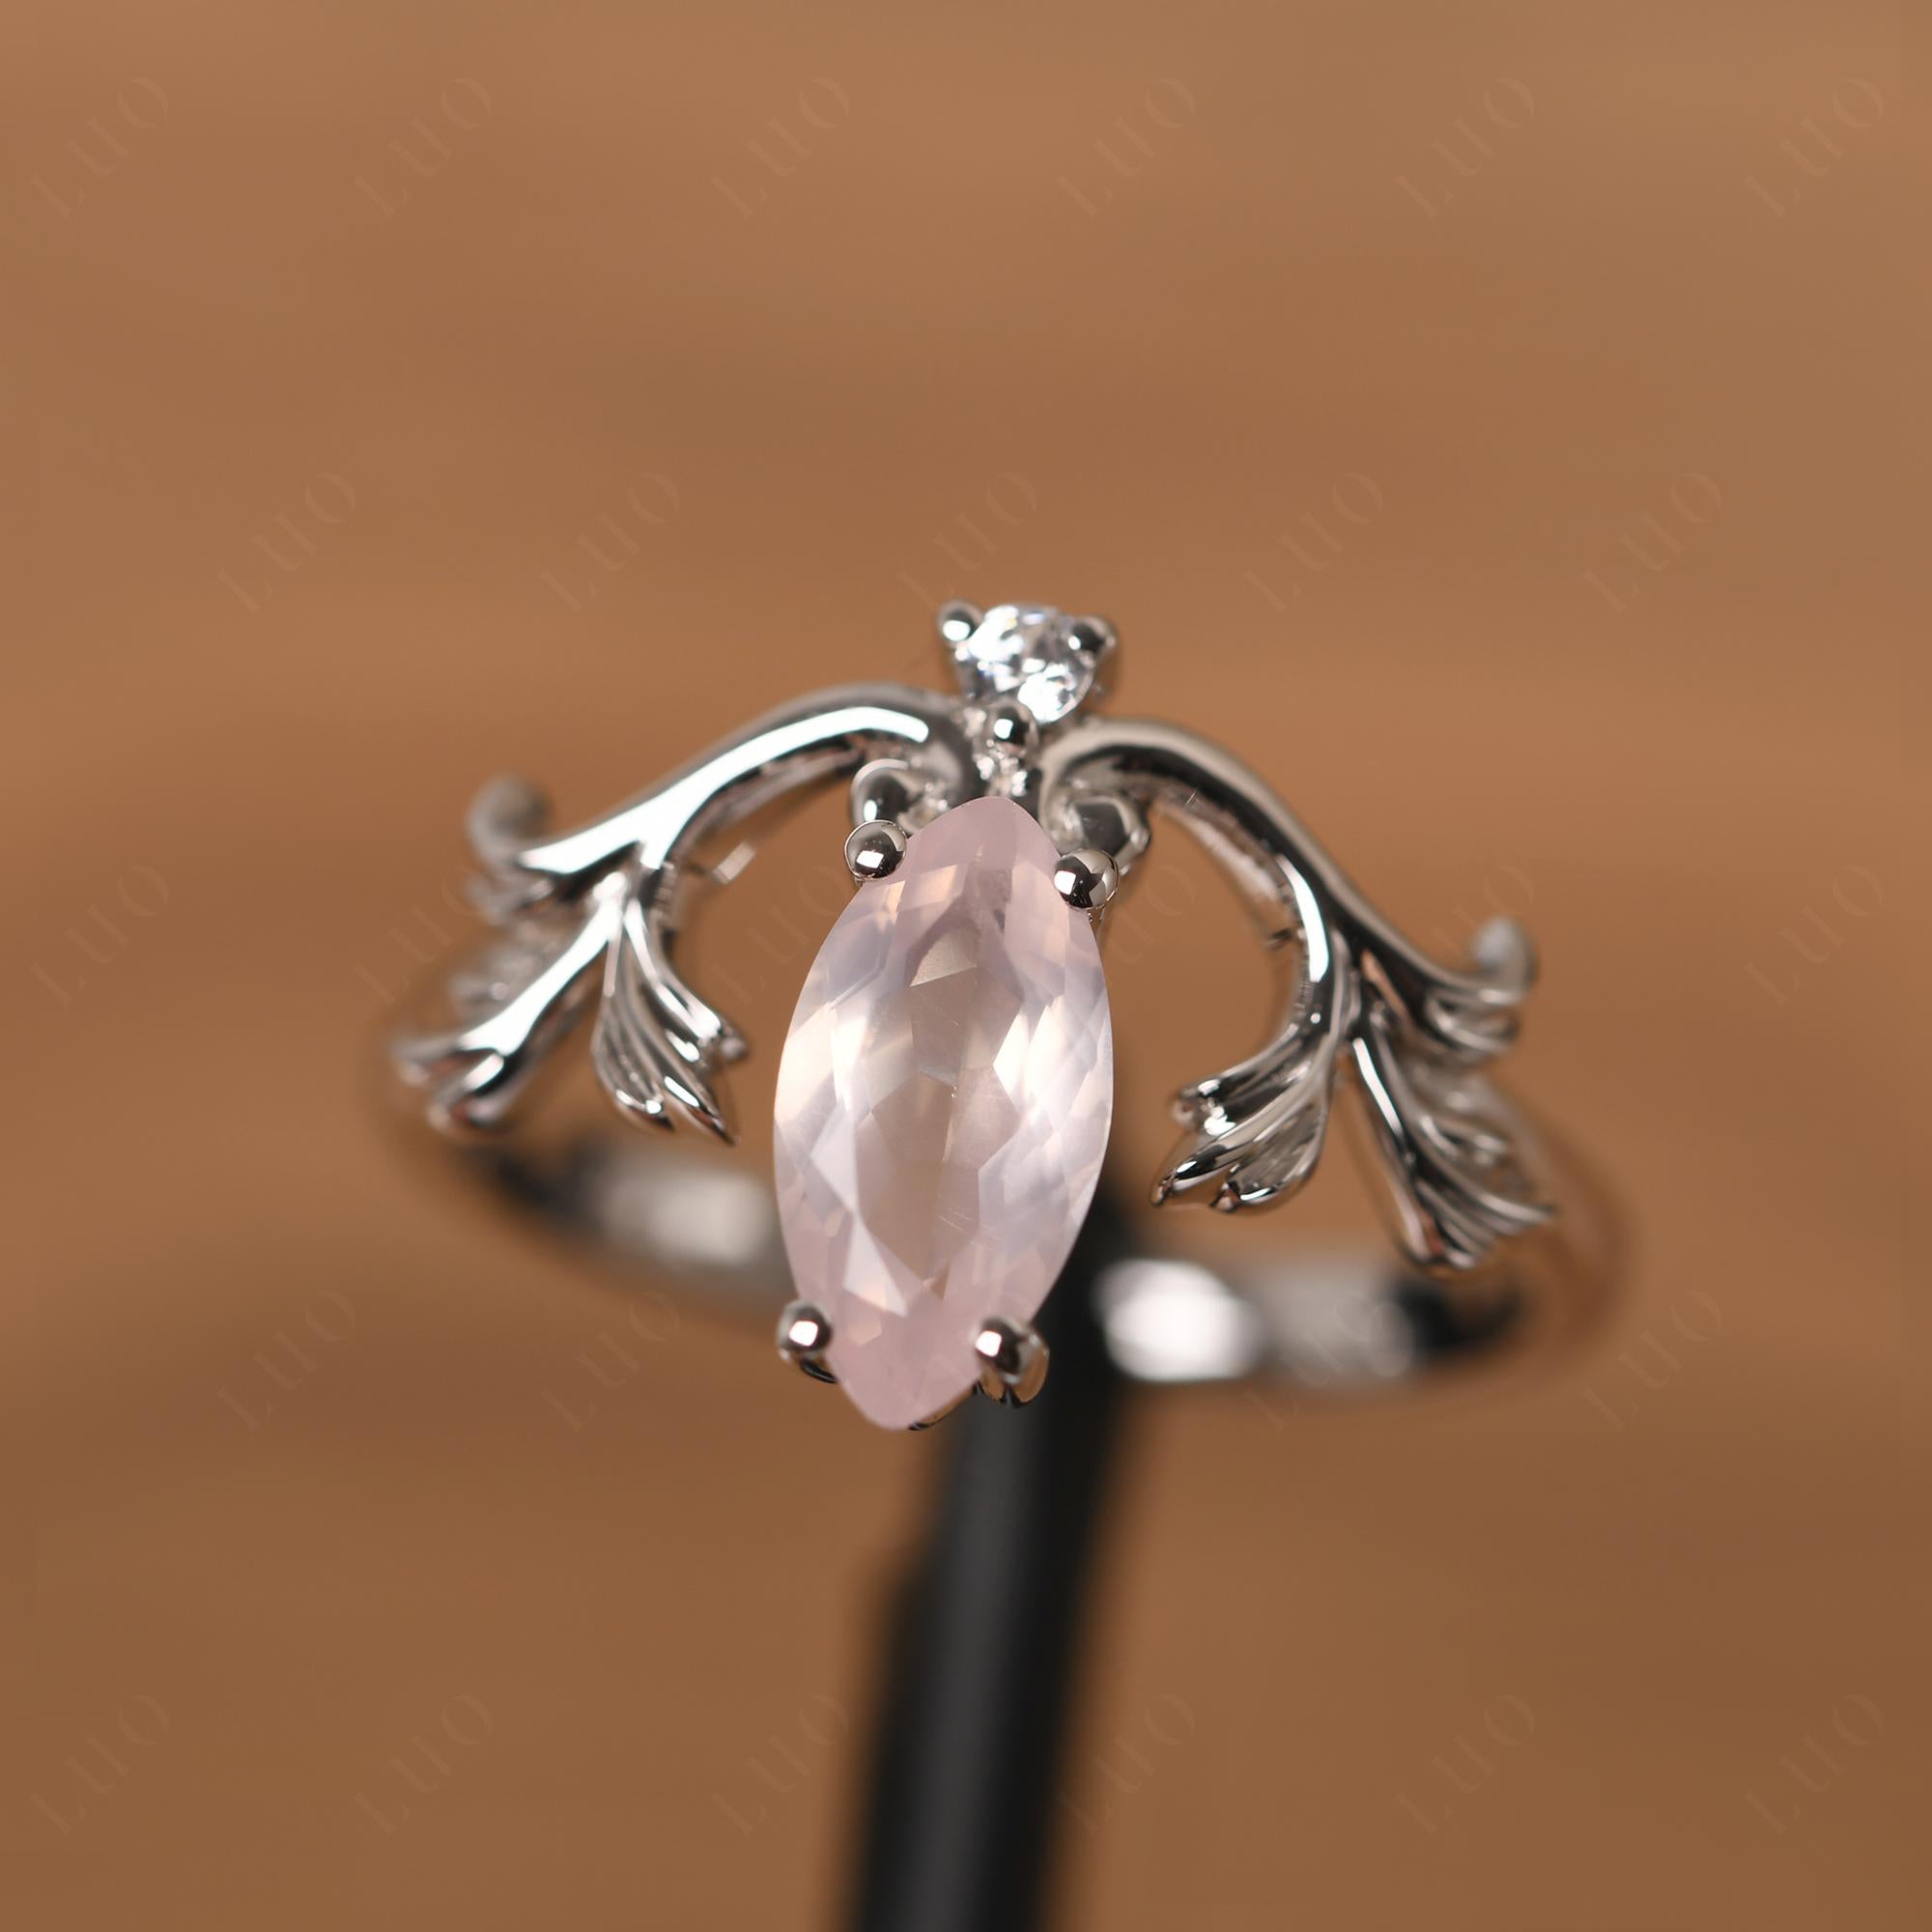 Baroque Marquise Cut Rose Quartz Ring - LUO Jewelry